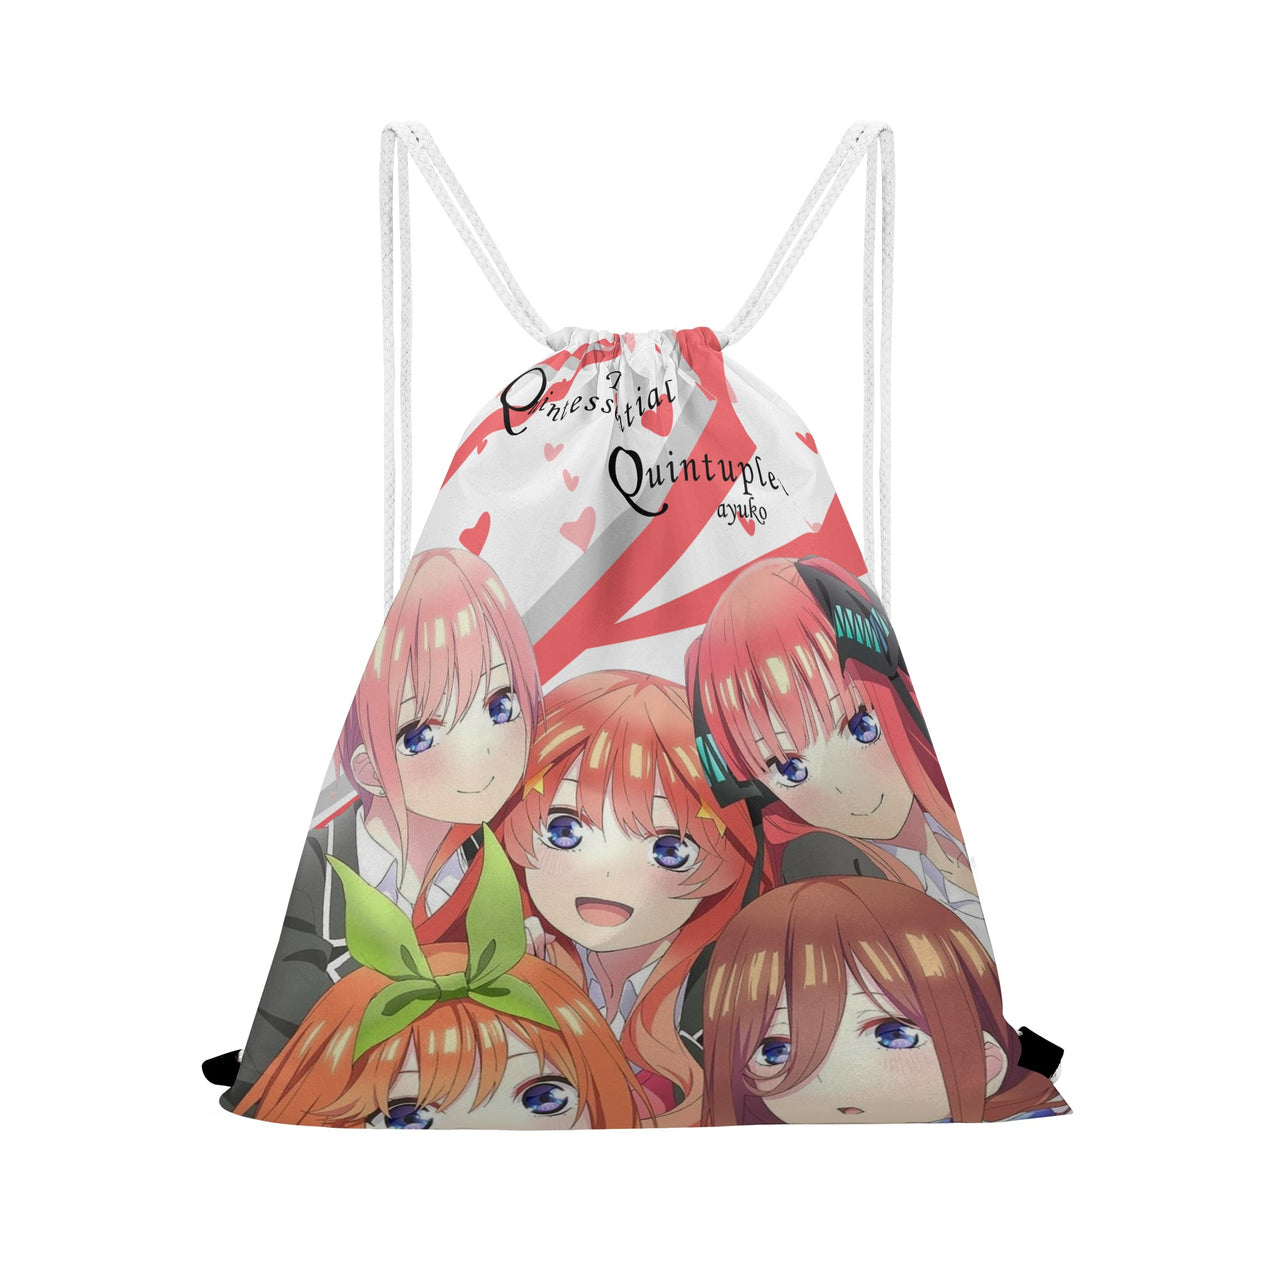 La borsa con coulisse Anime Quintessential Quintuplets